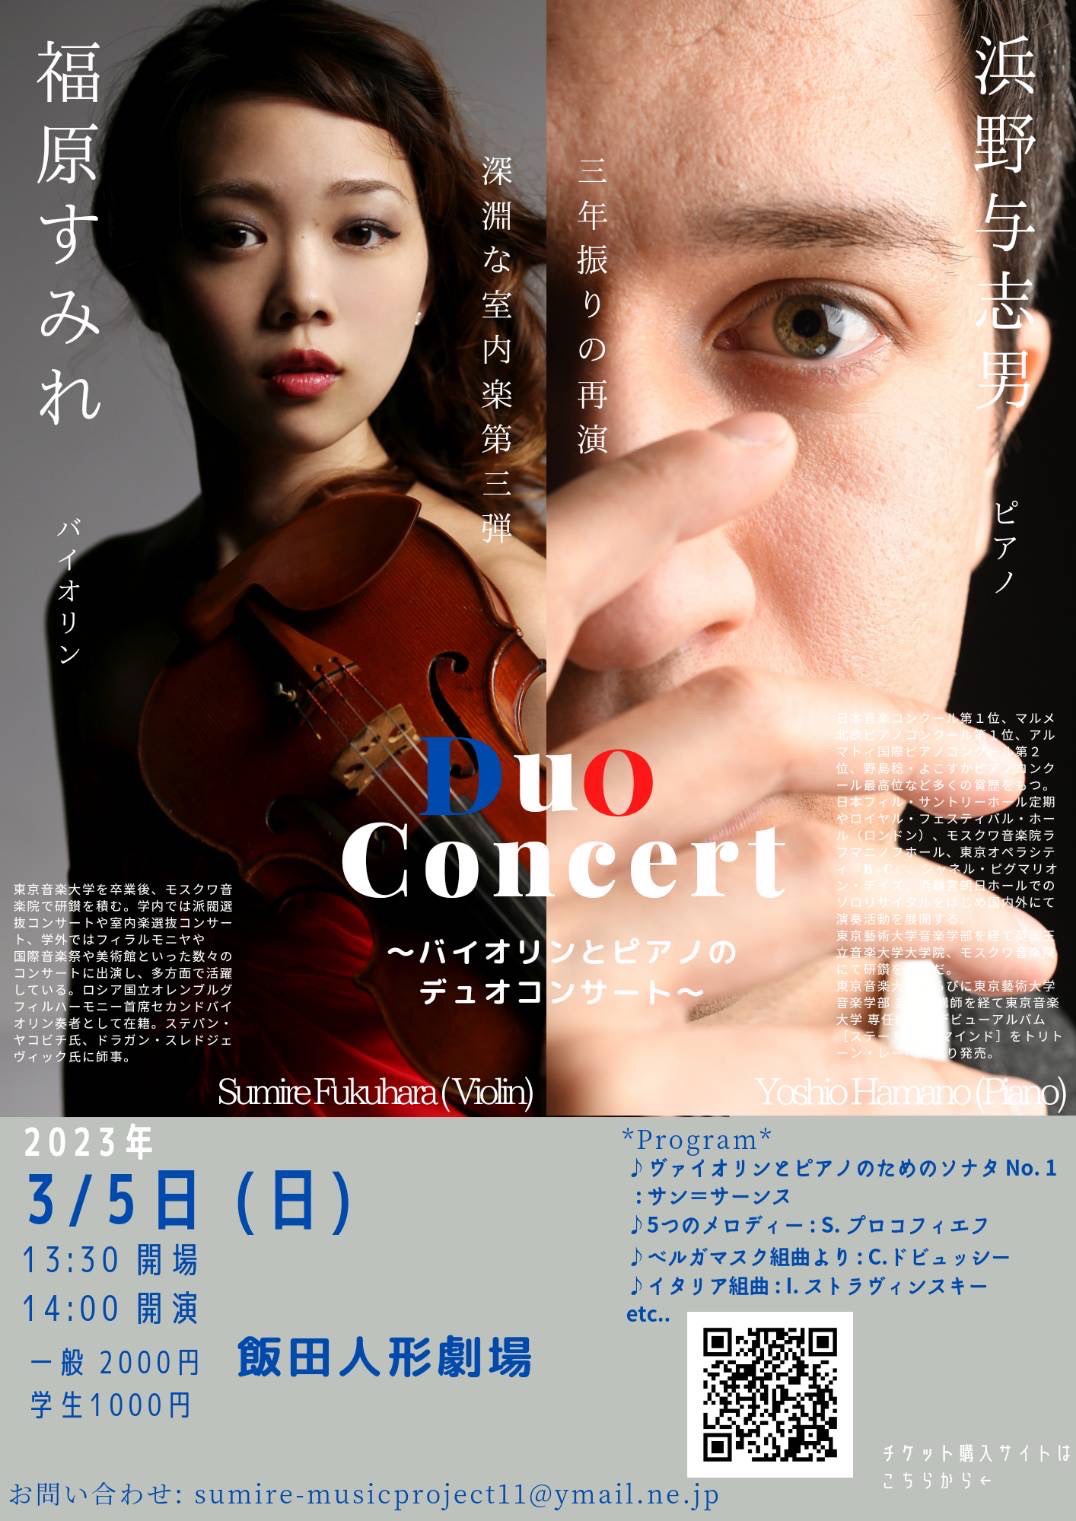 福原すみれ 浜野与志男 Duo Concert (長野公演)